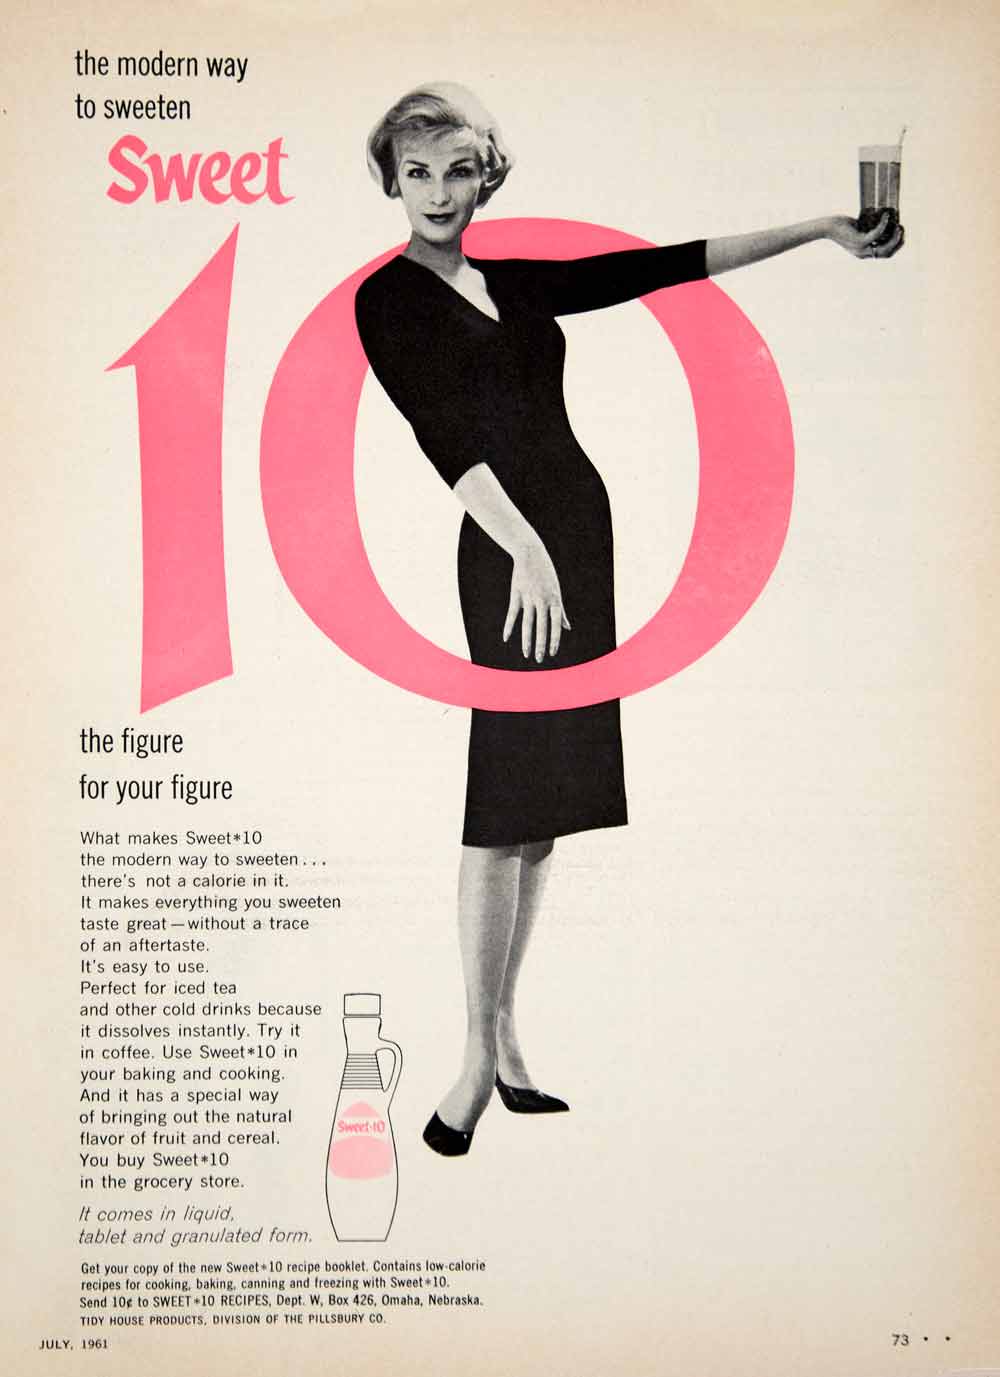 1961 Ad Vintage Sweet 10 Sweetener Sugar Substitute Weight Loss Diet Food YDW2